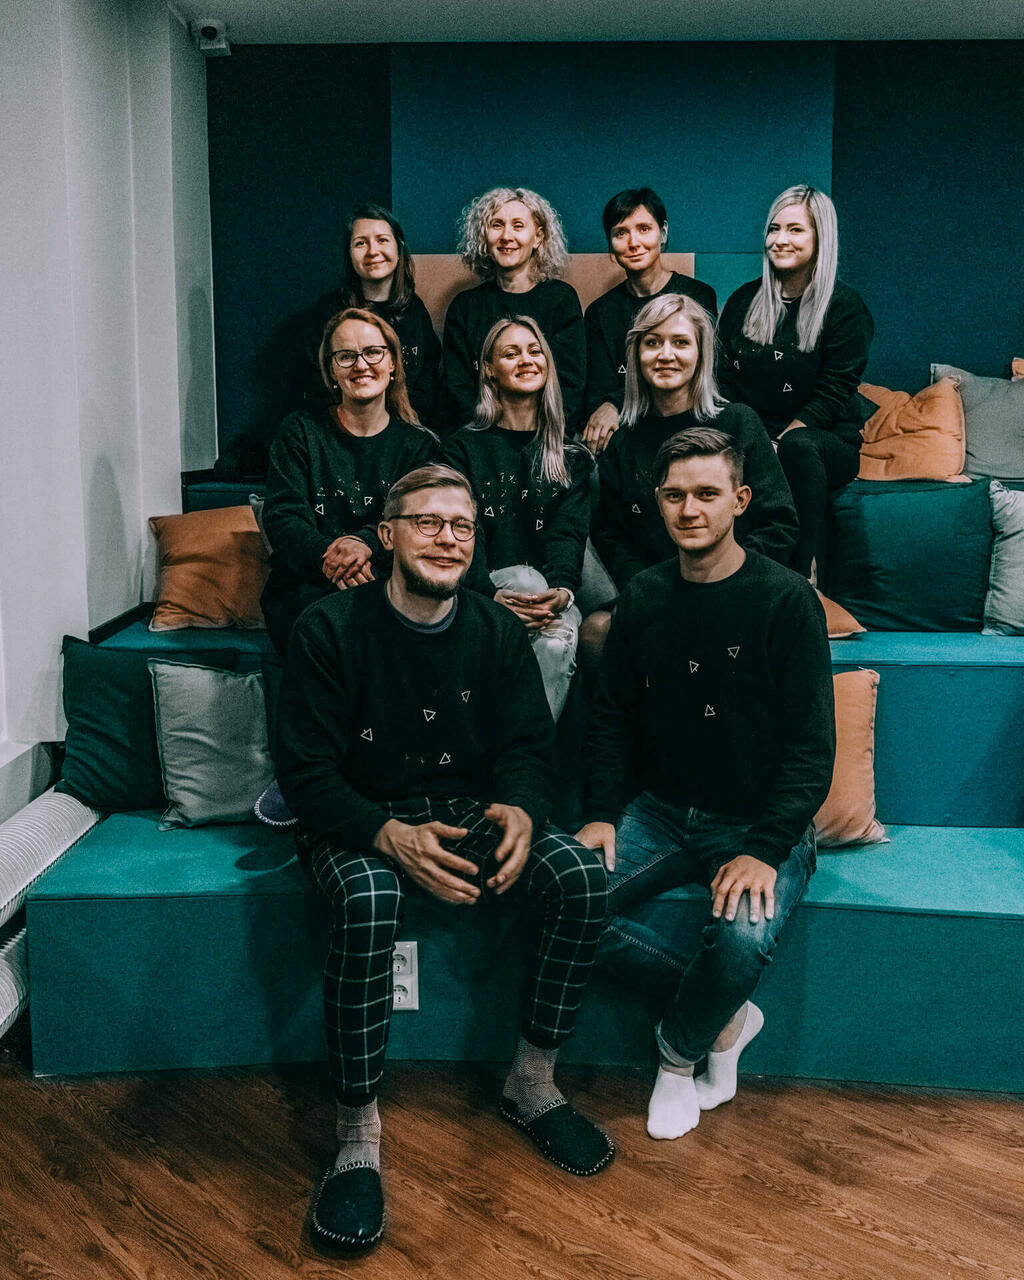 Team Startup Estonia